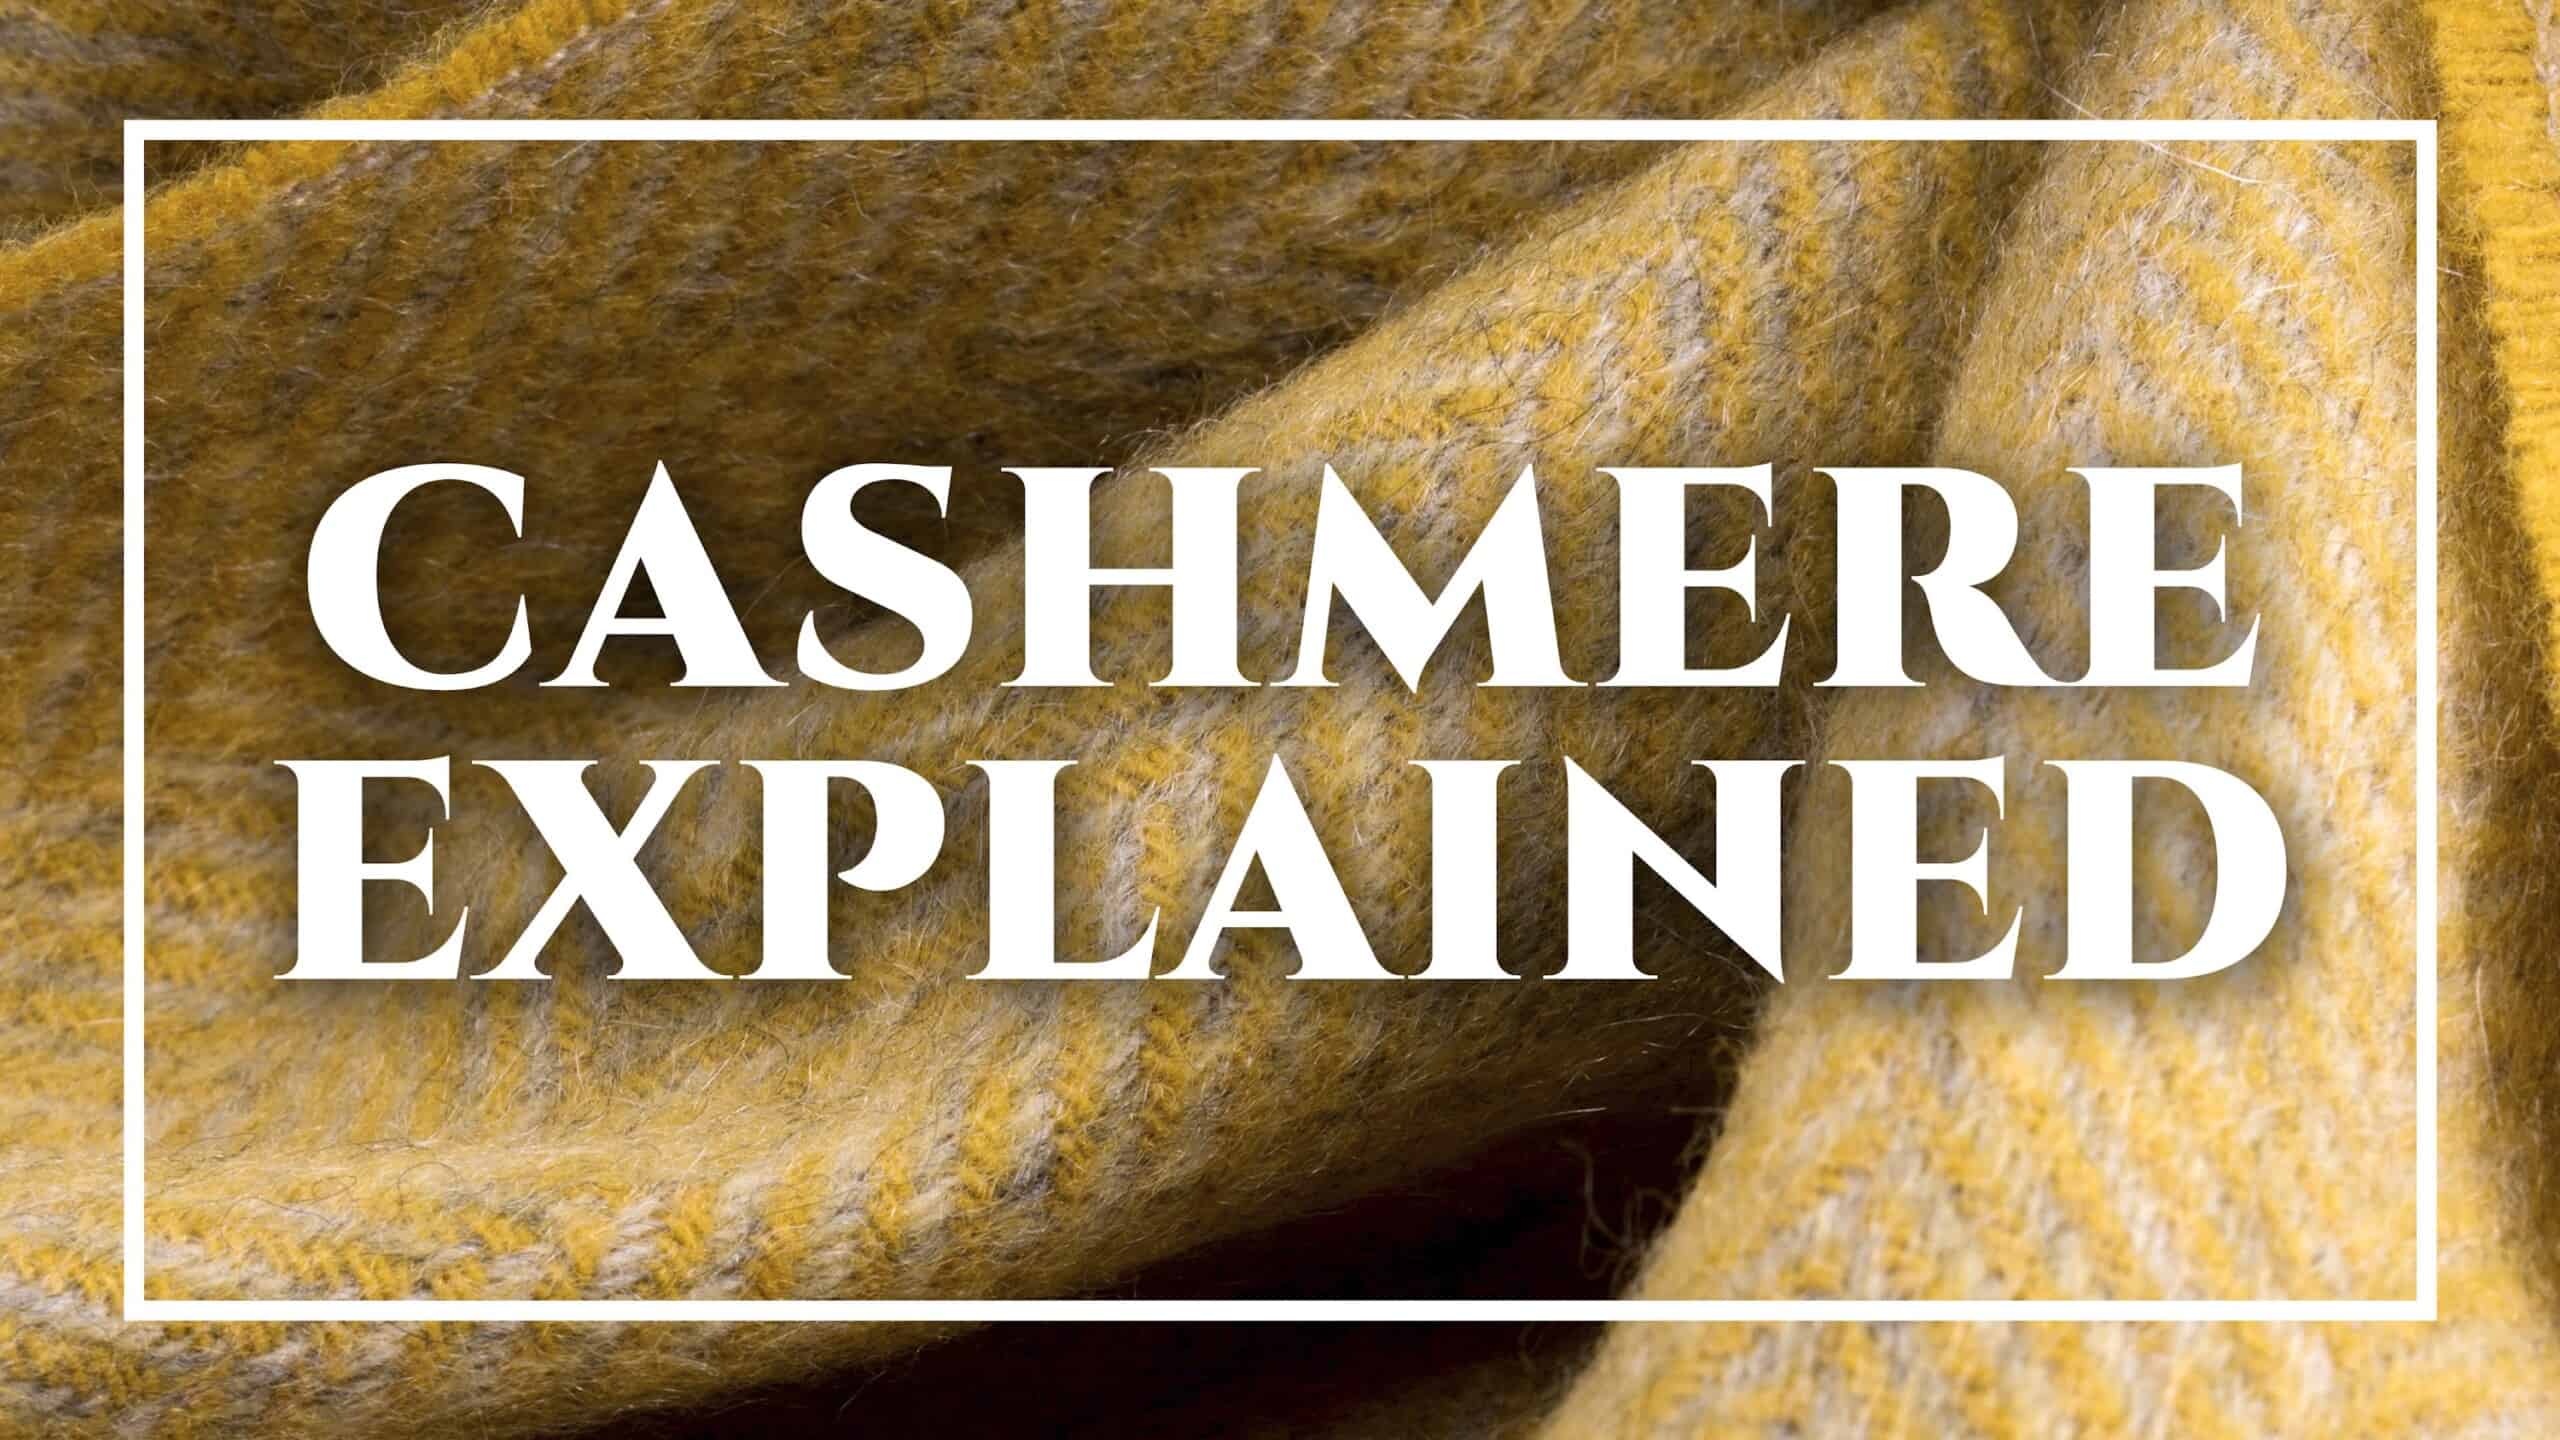 Cashmere: origins and processing